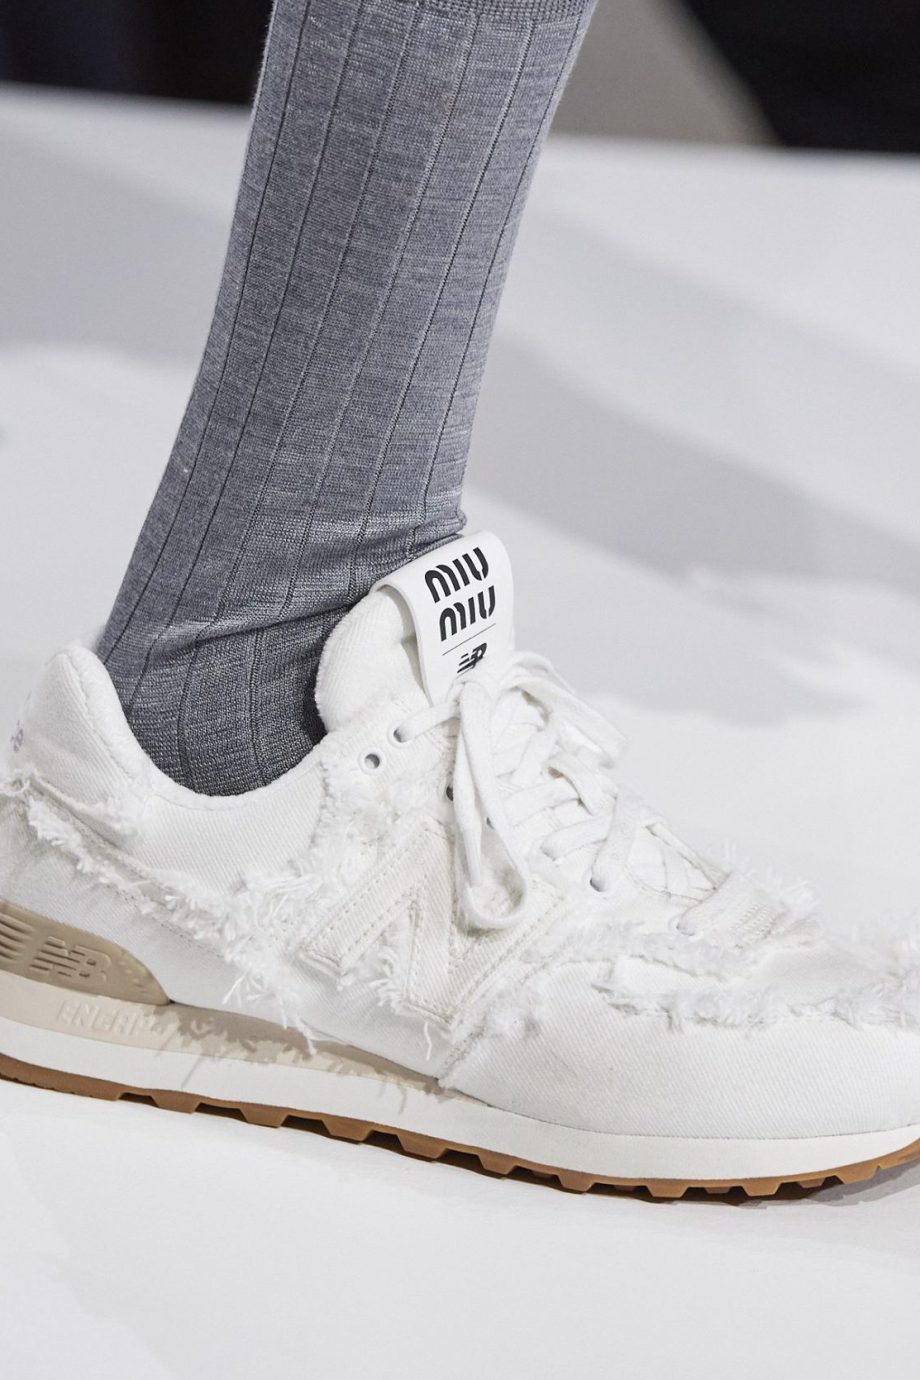 Ontwaken Verzadigen Bevestigen De Miu Miu x New Balance sneakers zijn terug - Vogue NL